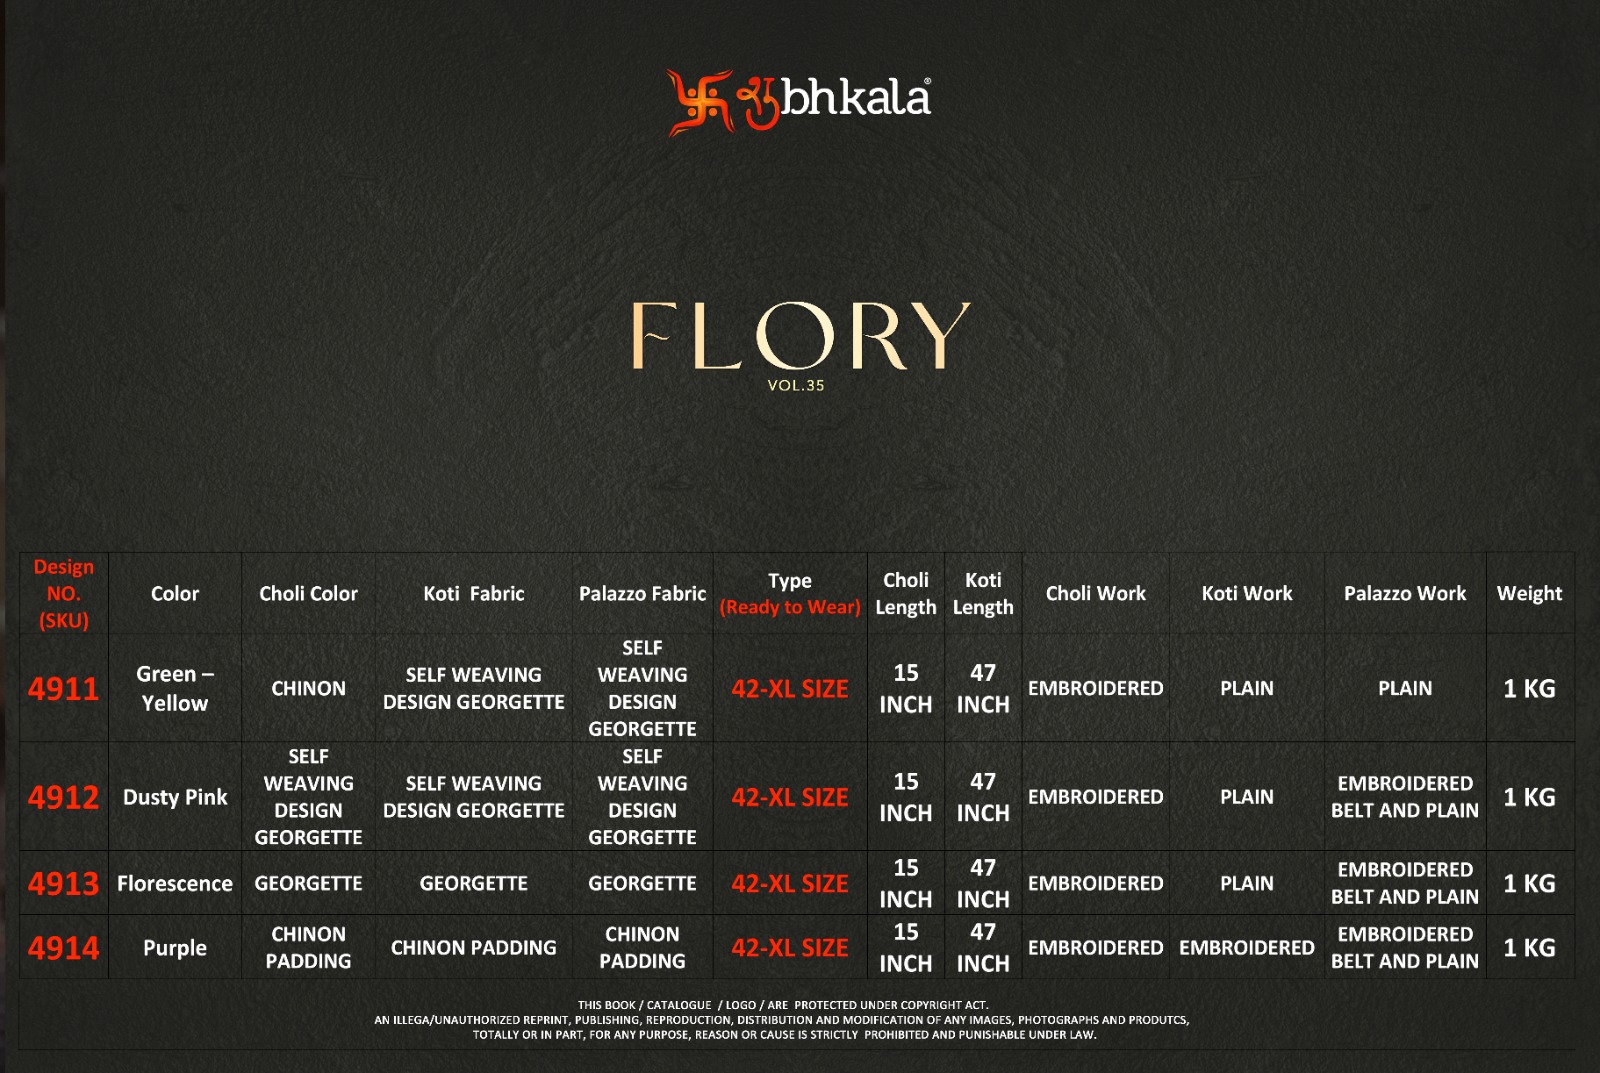 Shubhkala Flory Vol 35 collection 2